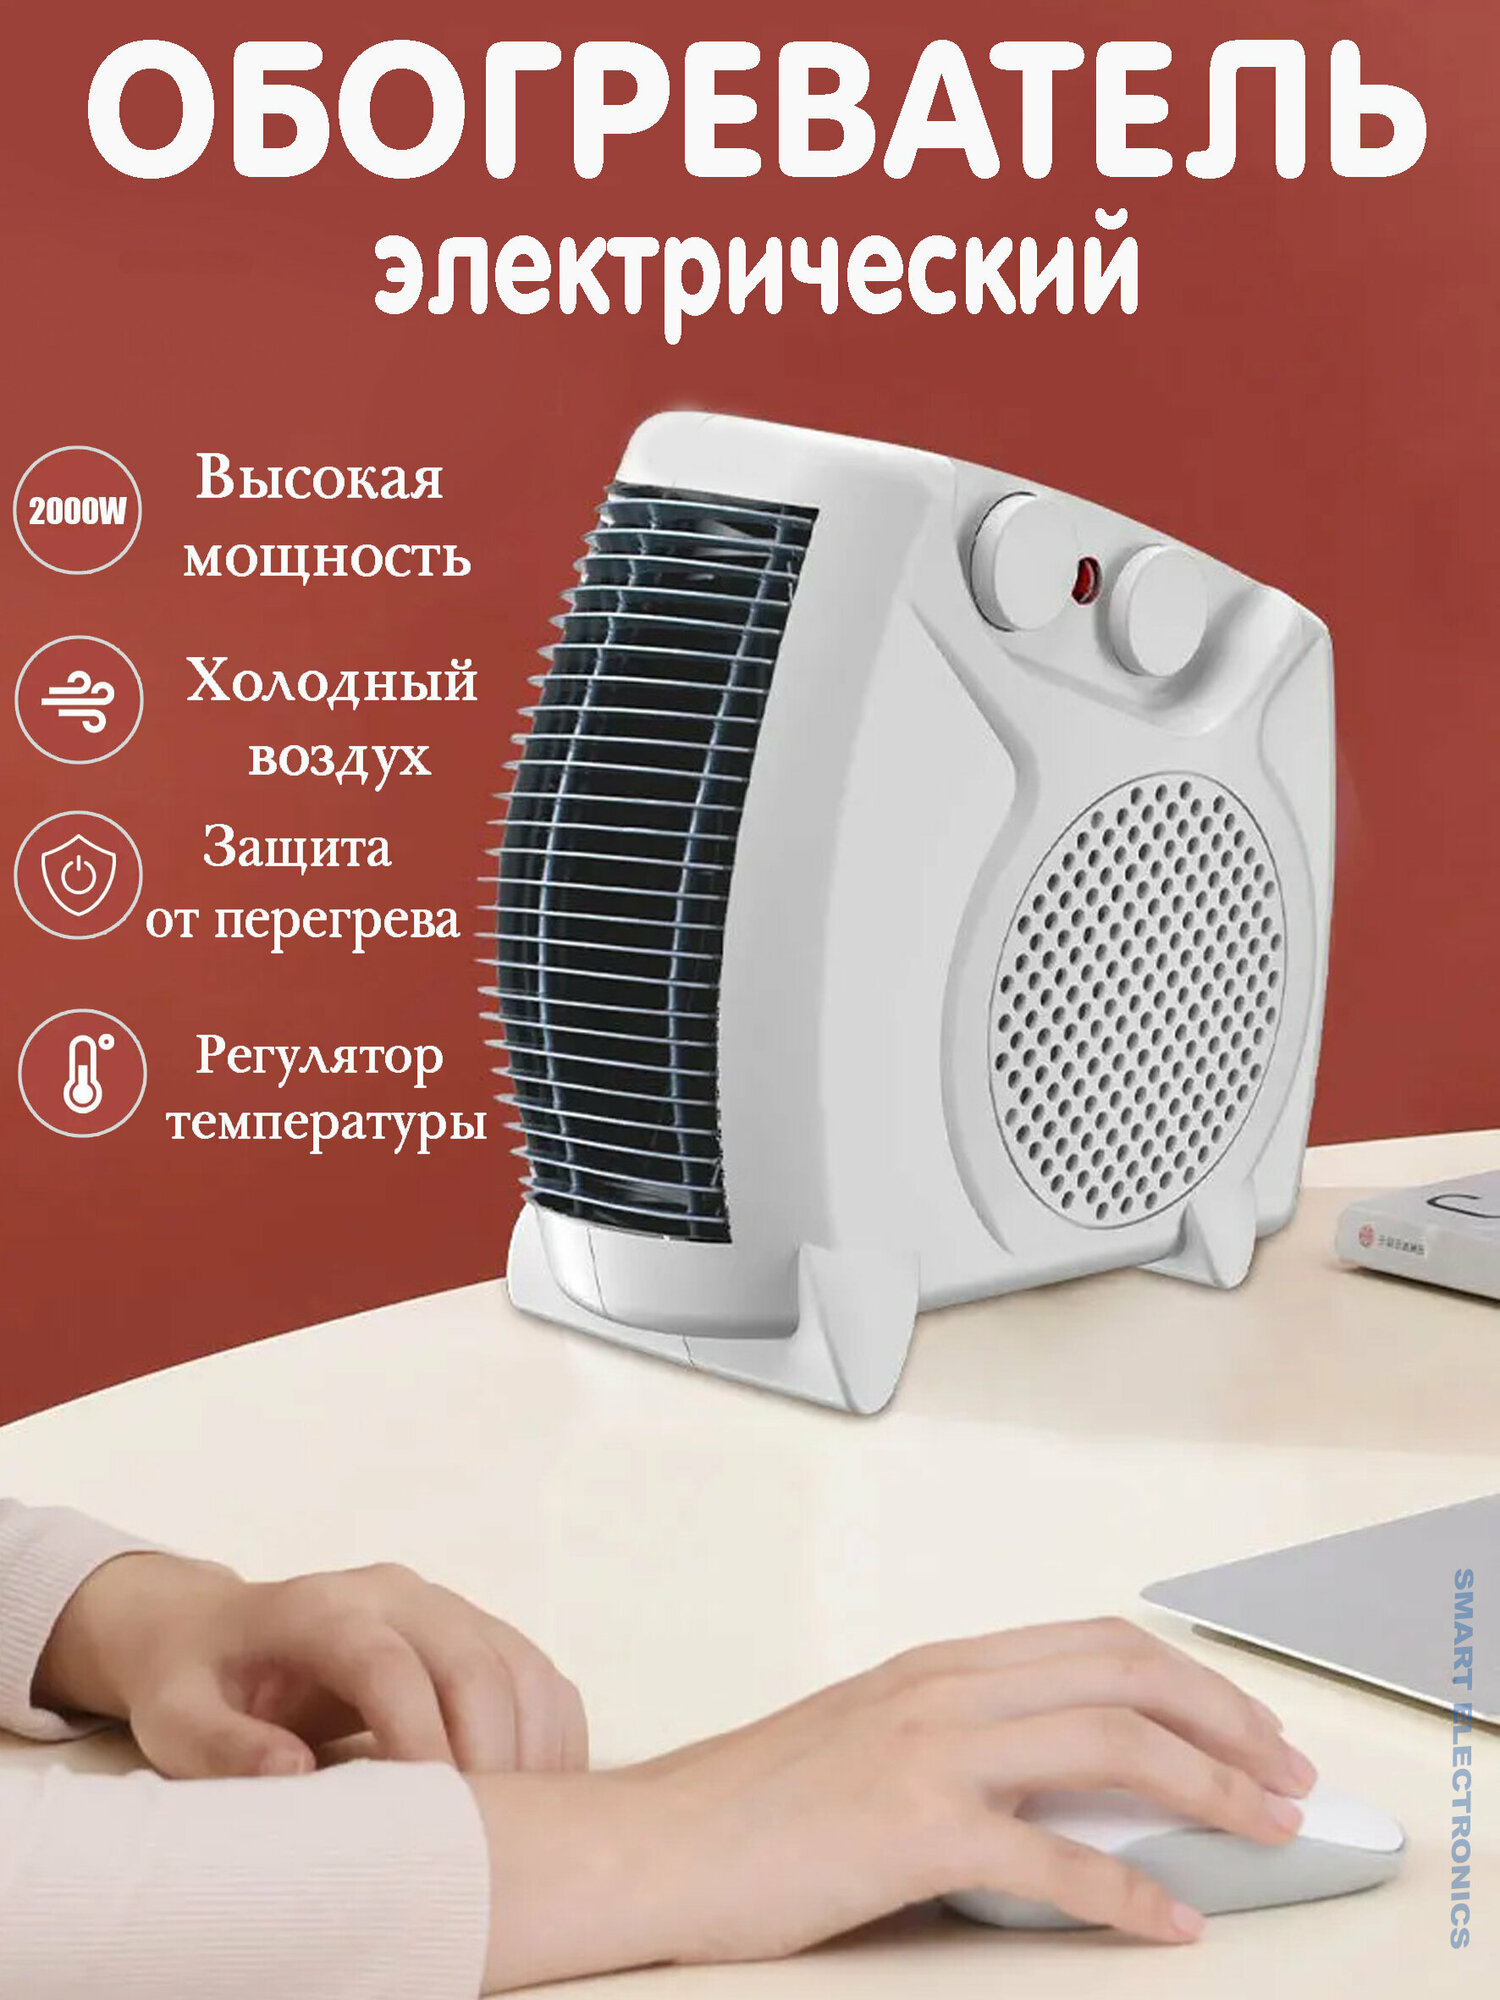 Тепловентилятор, обогреватель -ветродуйка, высокая мощность, без шума, регулятор температуры; белый